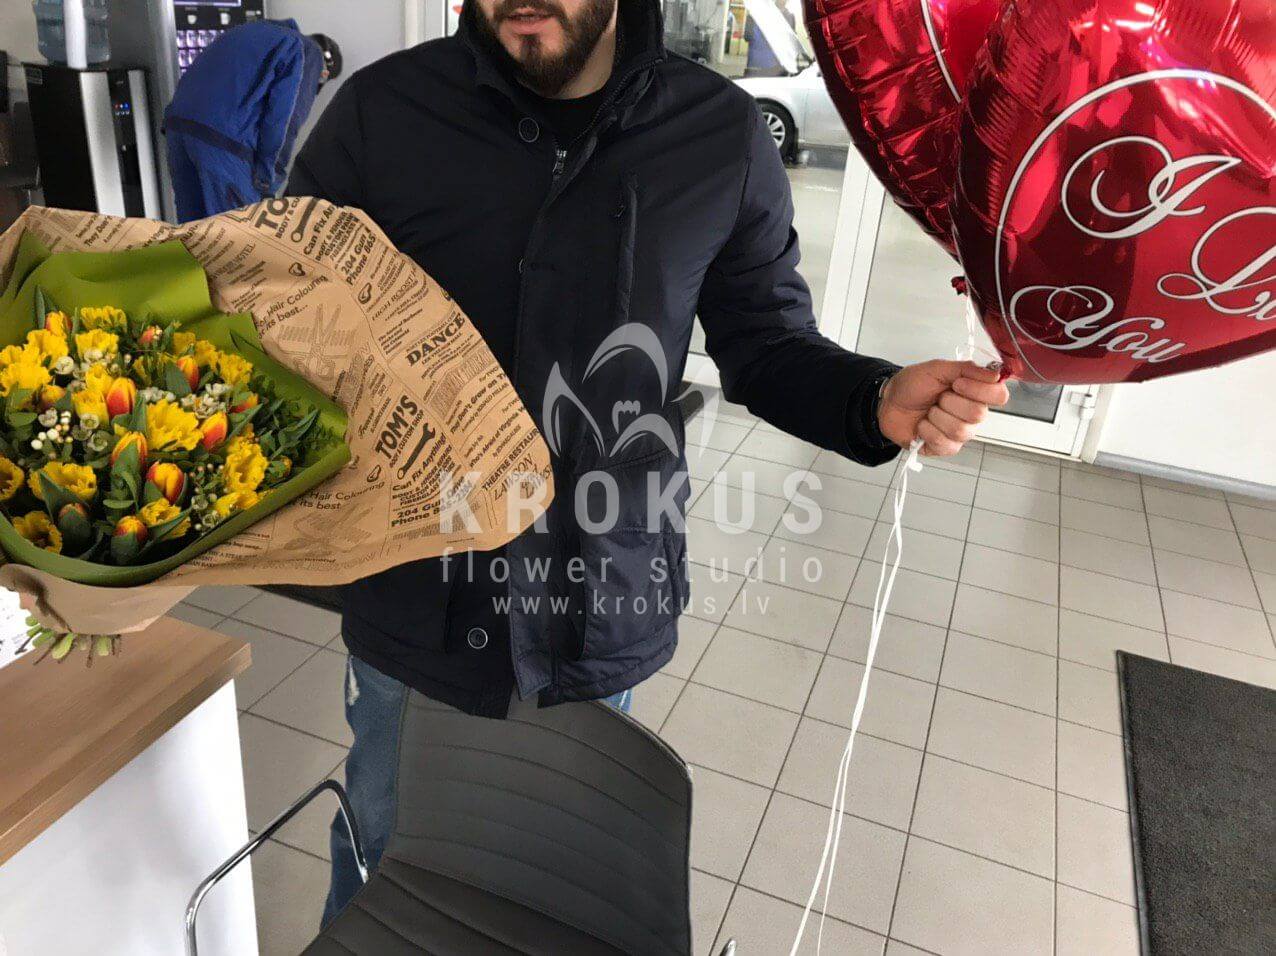 Deliver flowers to Rīga (tulipspistaciadaffodilgenista)